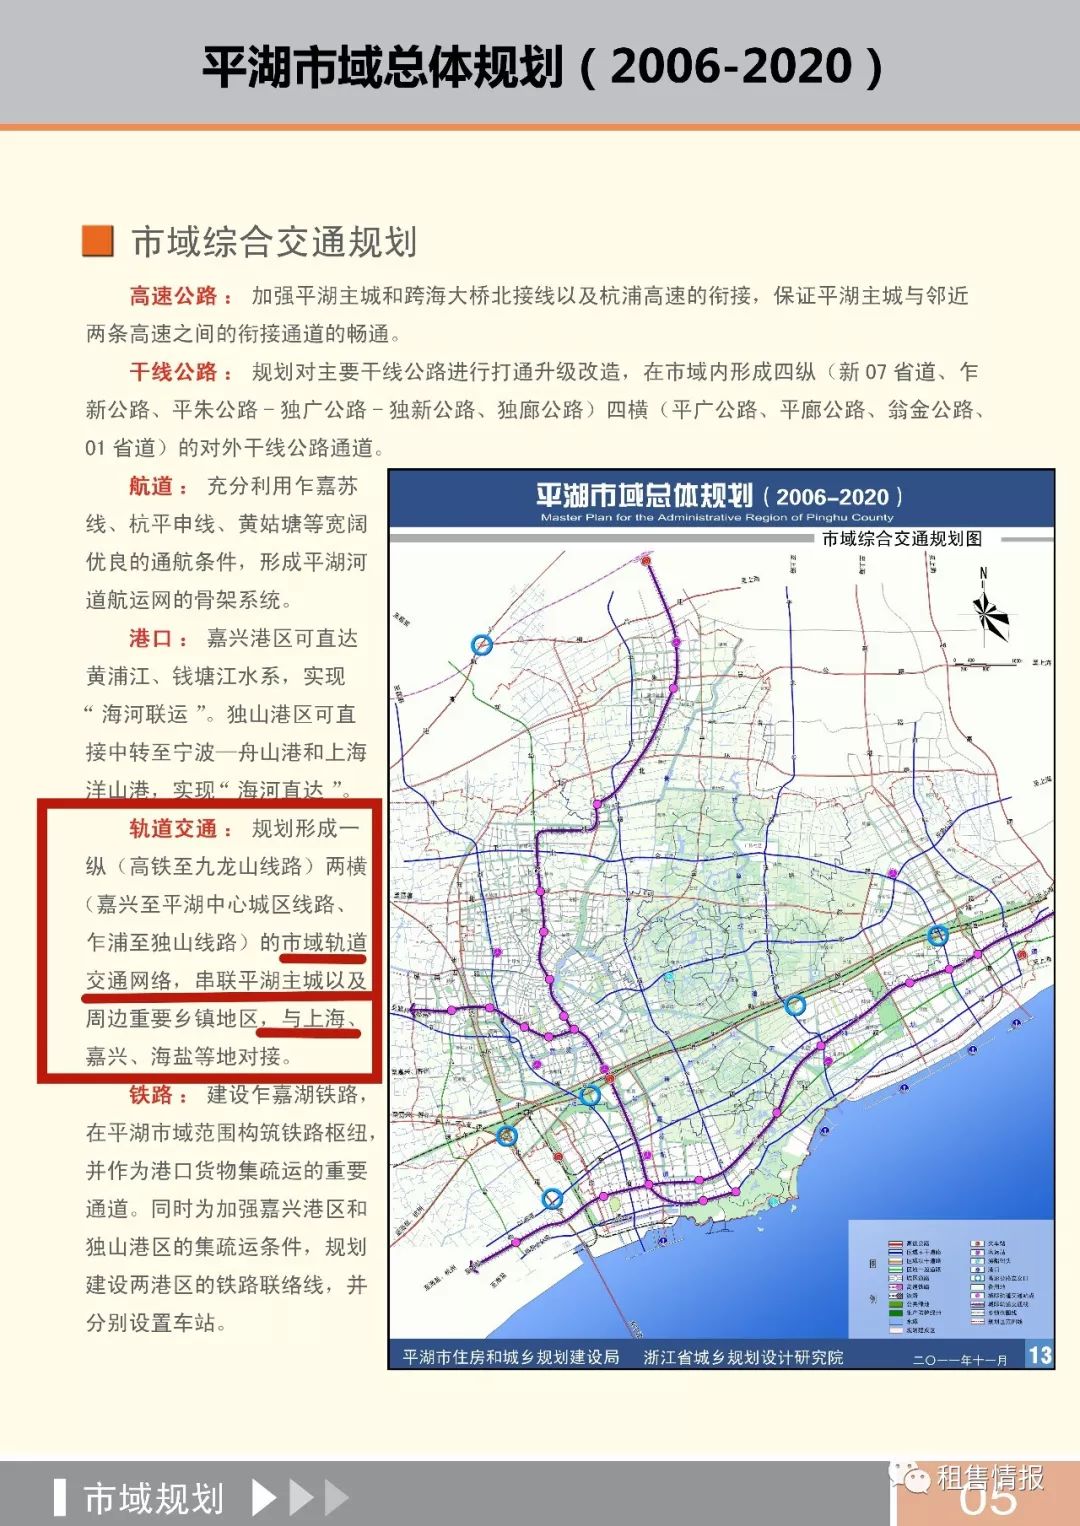 官宣沪嘉城际铁路沪平城际铁路2条线路将接轨上海